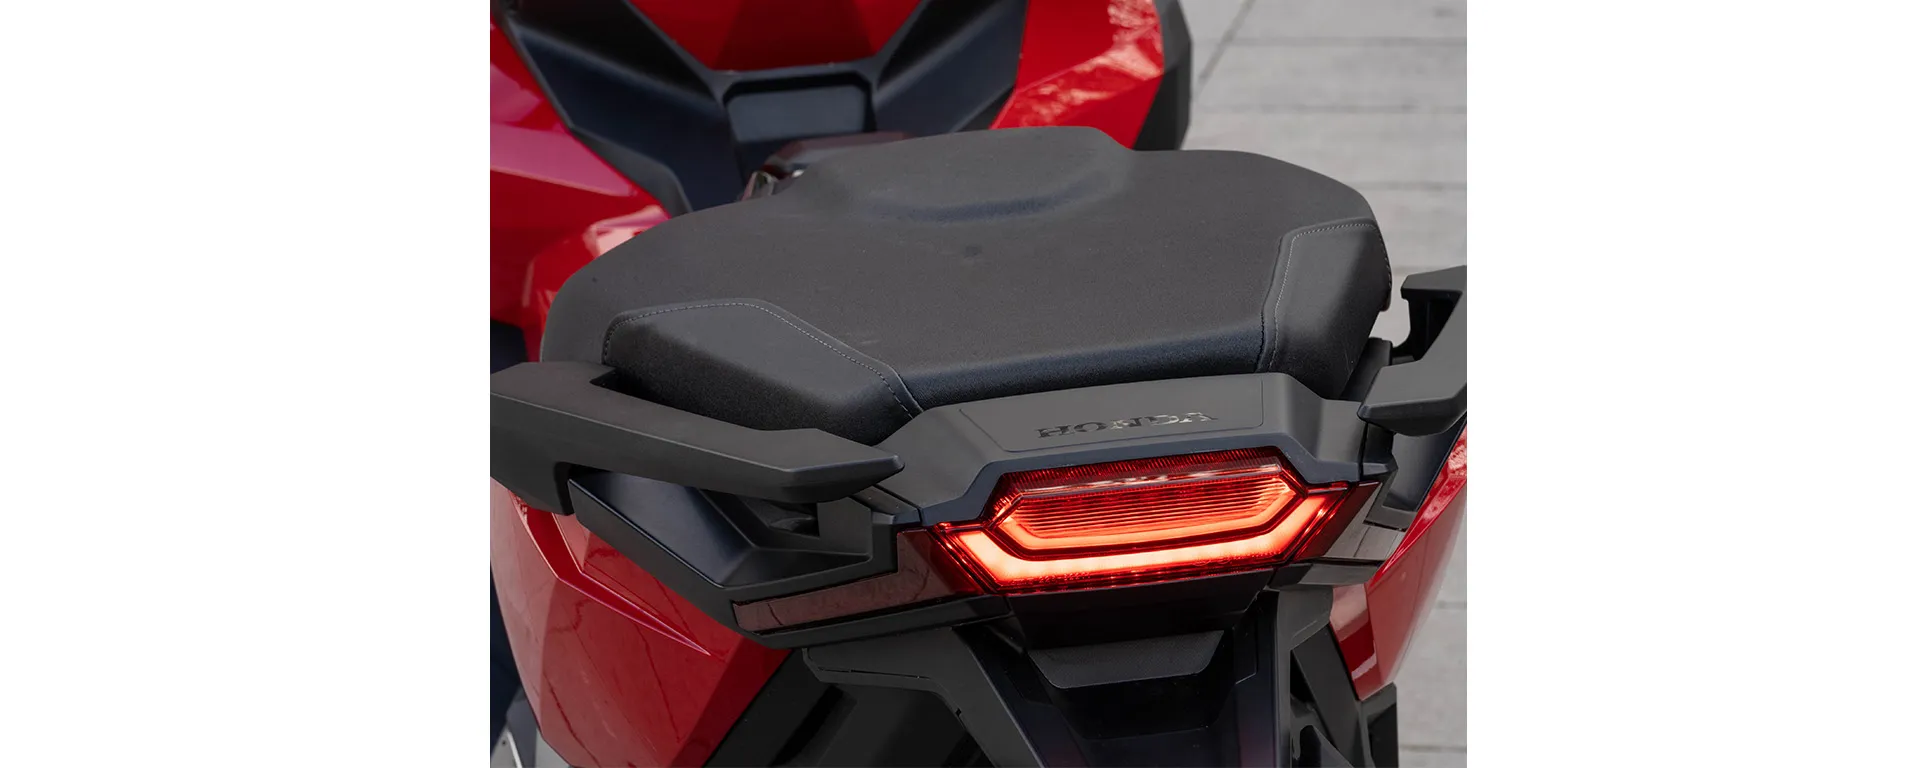 Conforto no assento redesenhado da Moto Honda X-ADV Vermelha